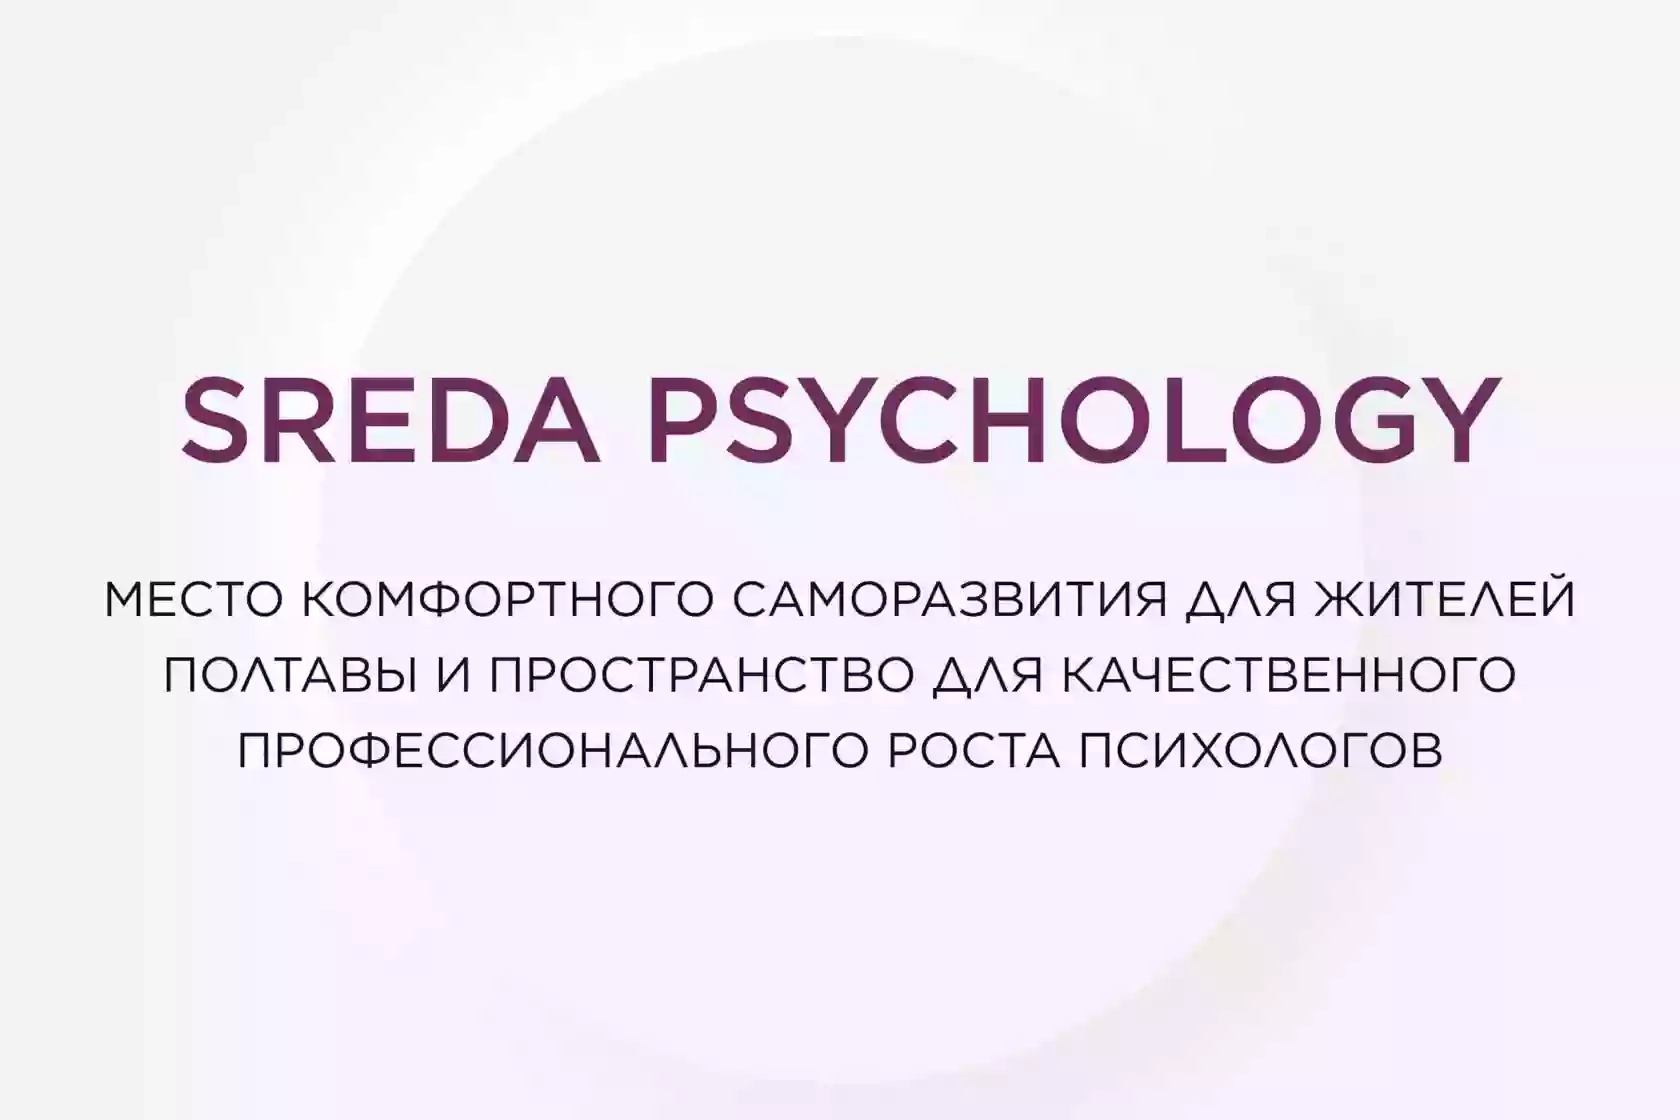 SREDA psychology